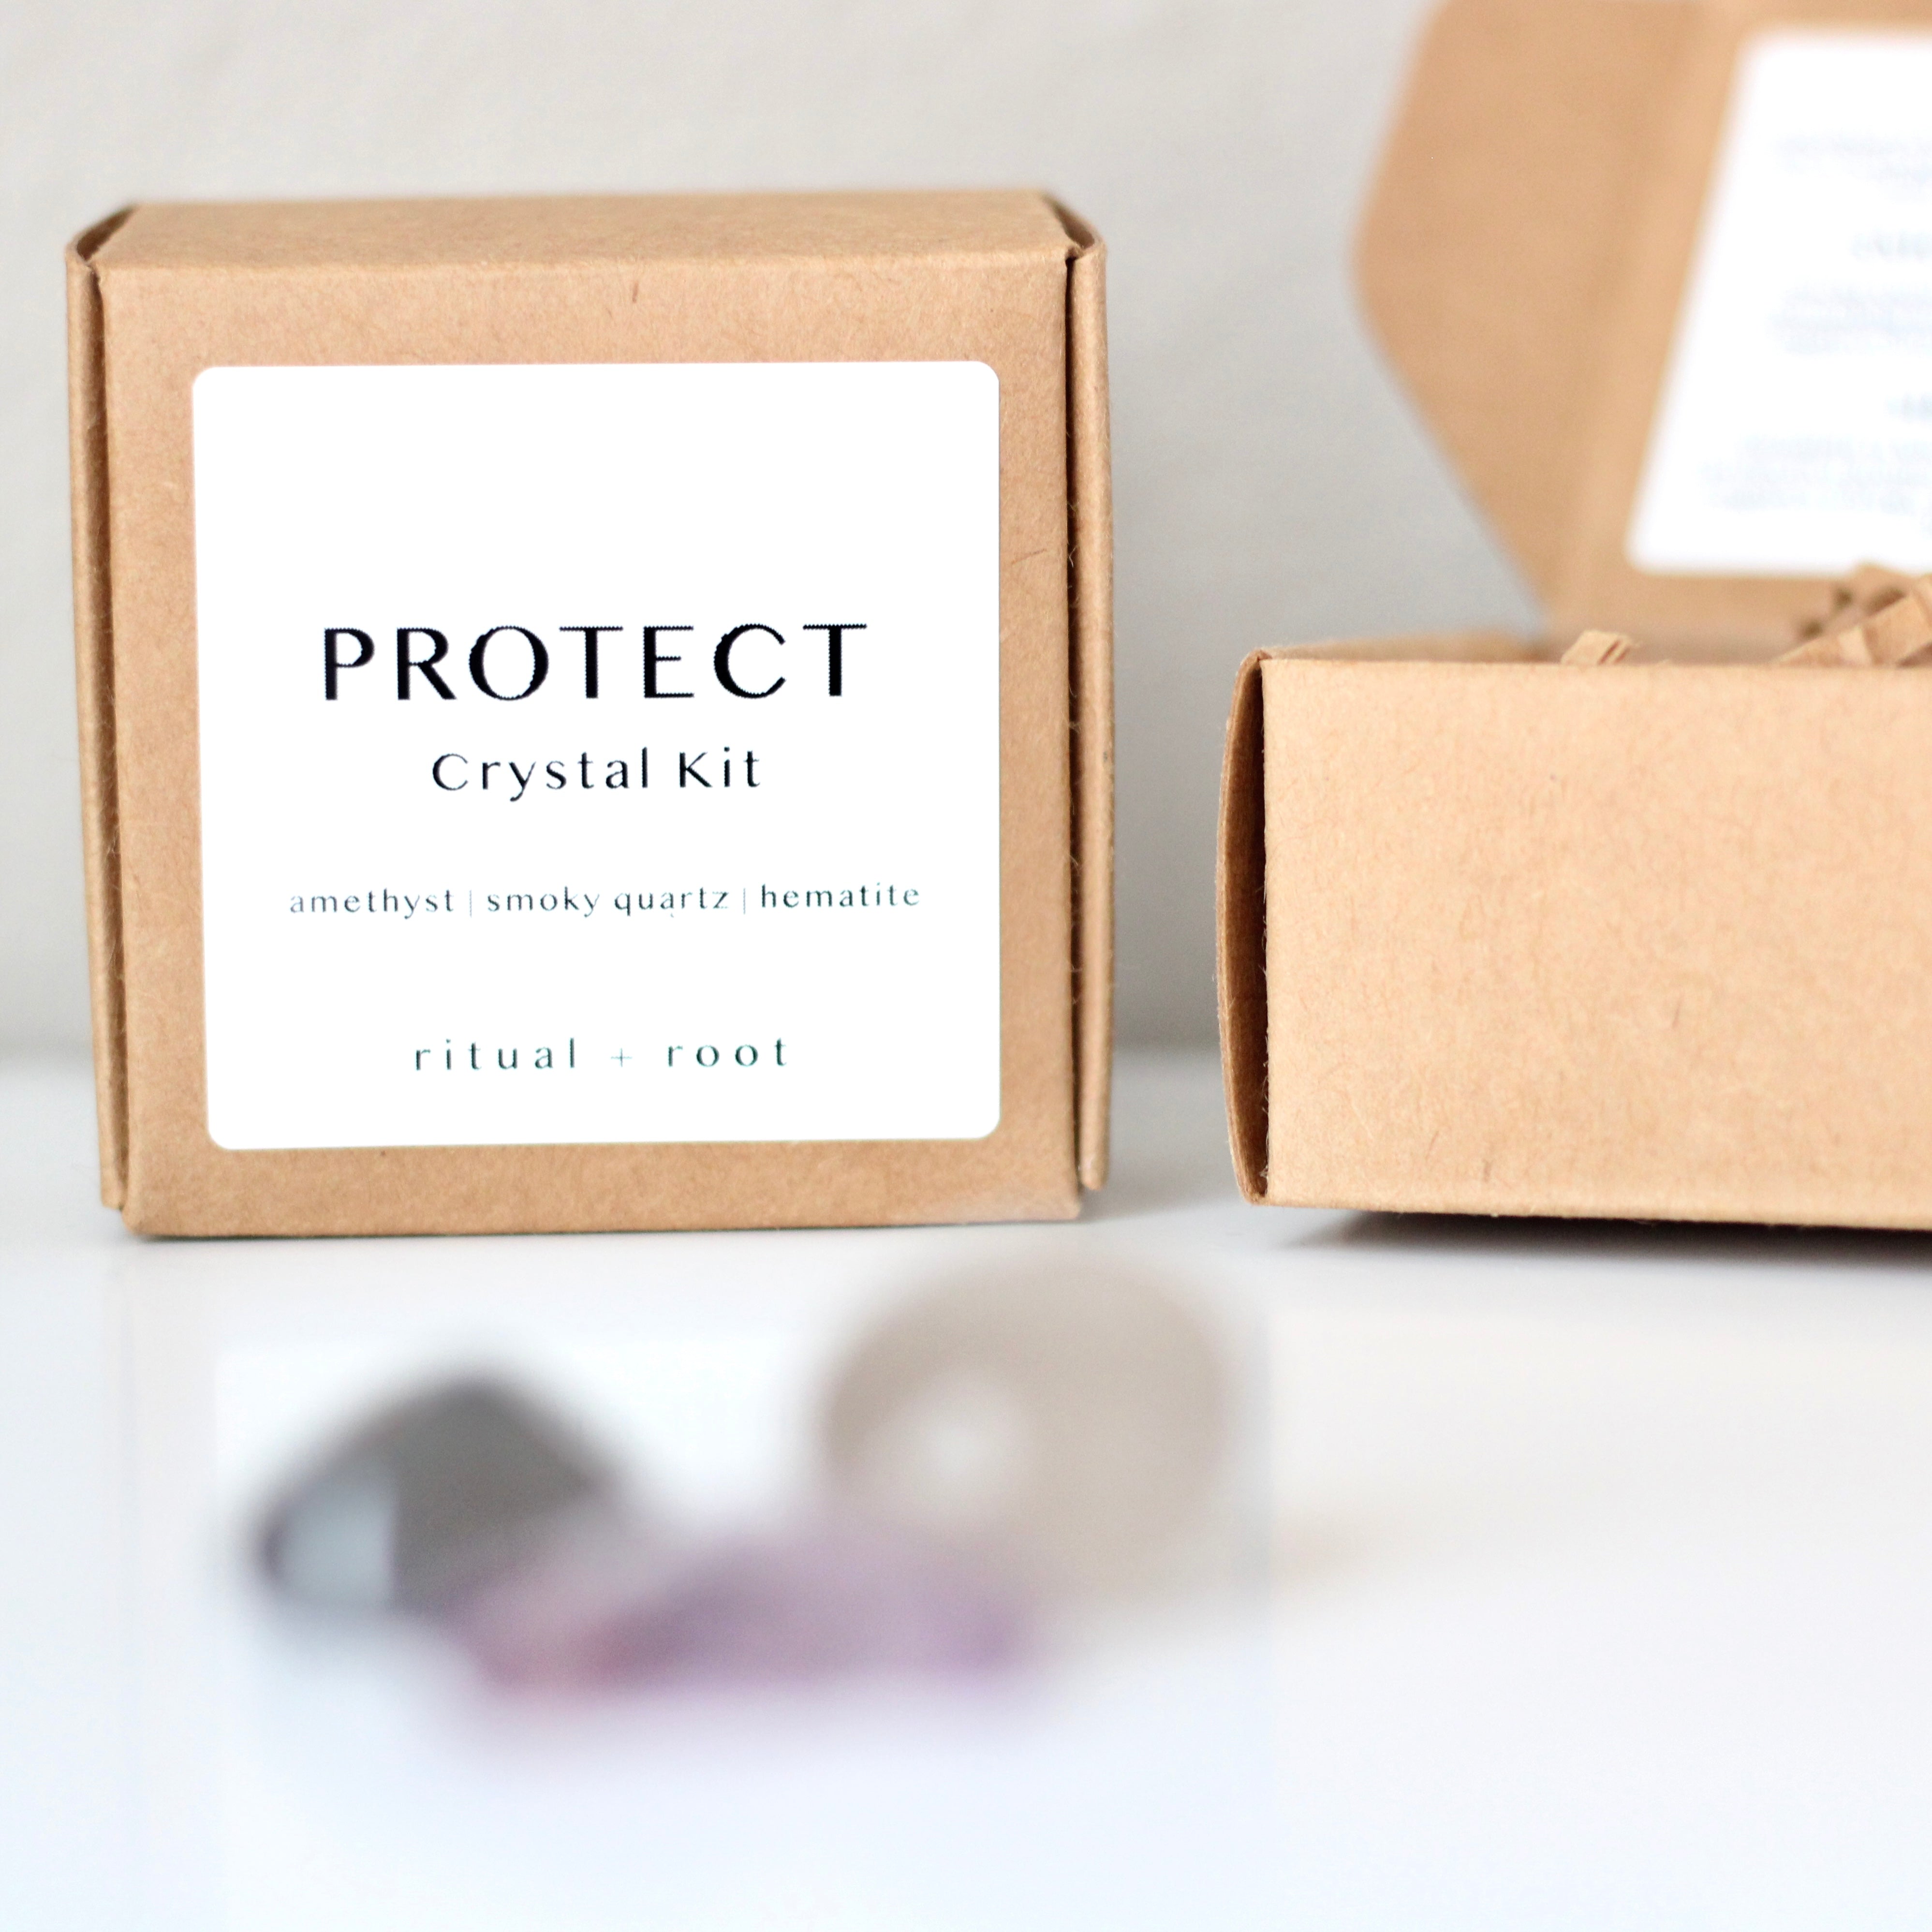 PROTECT Crystal Kit